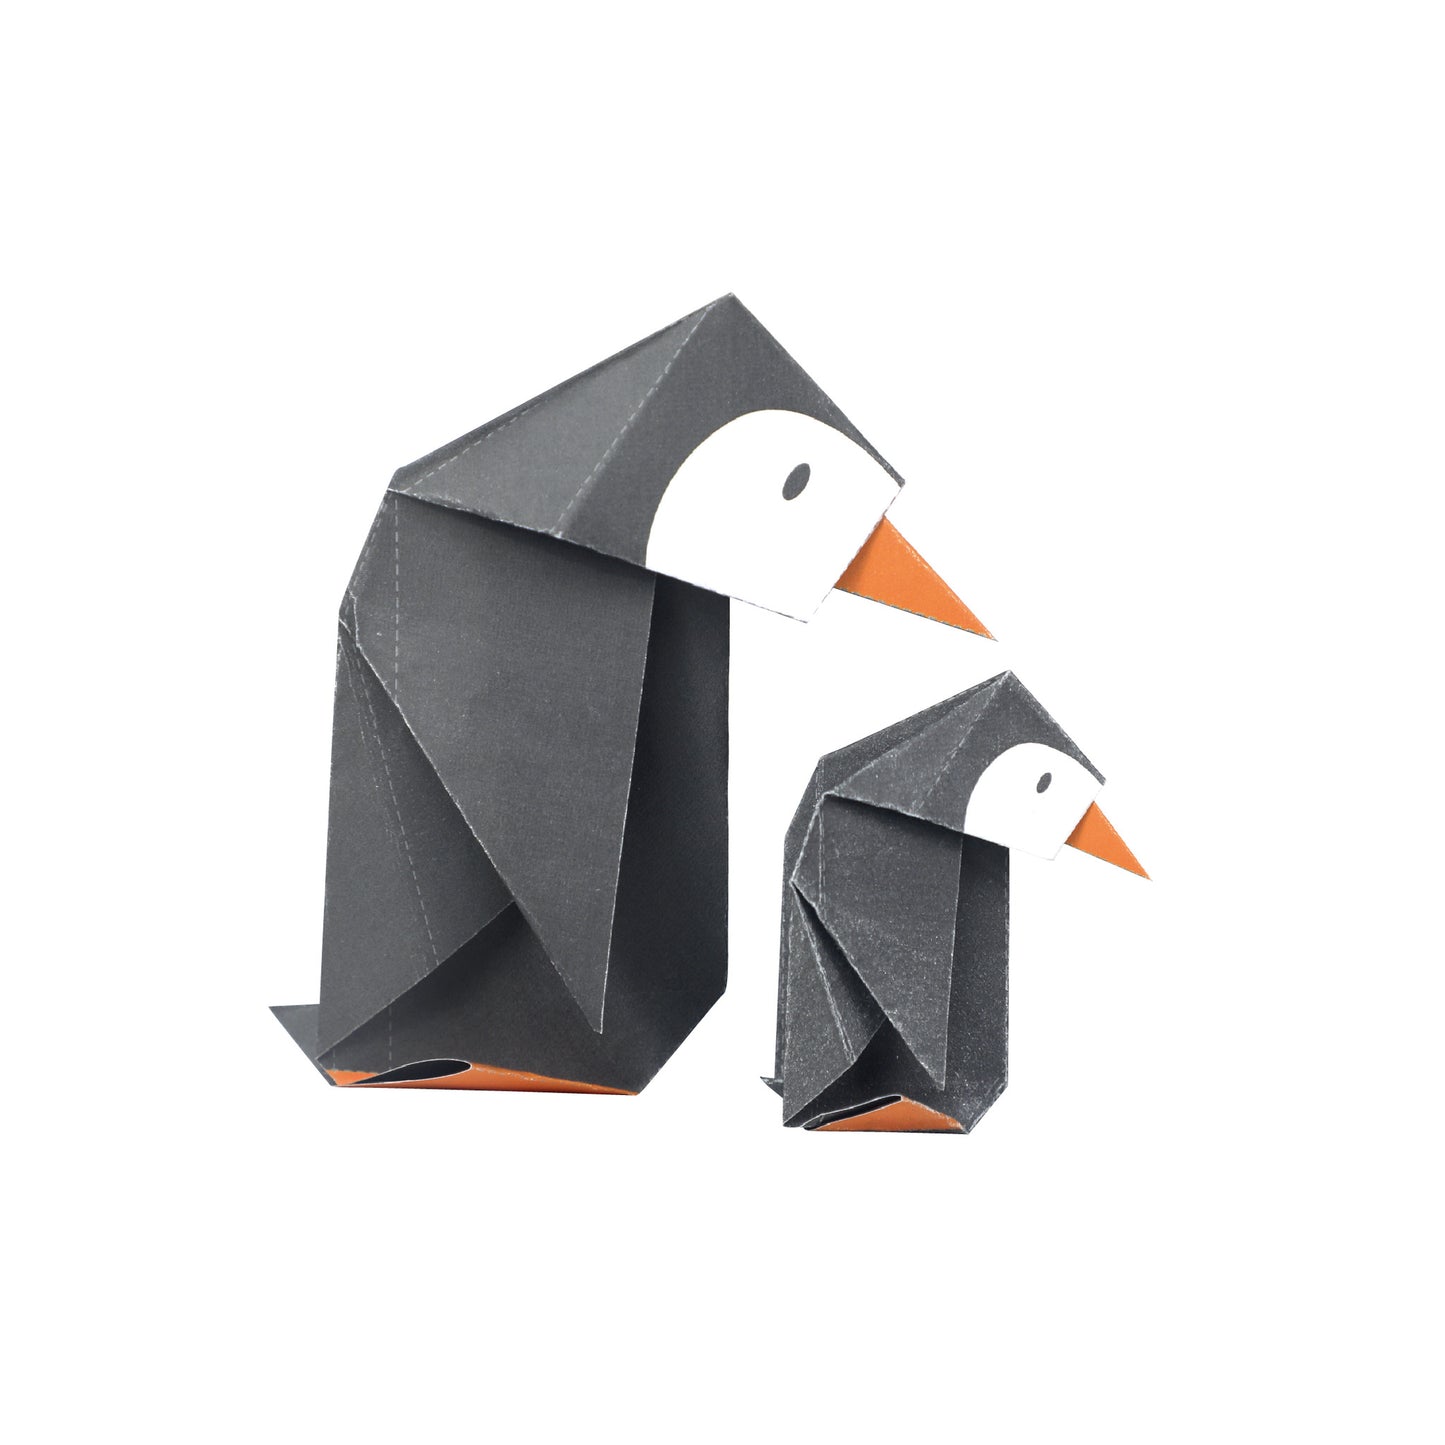 Origami Create My Own Zoo